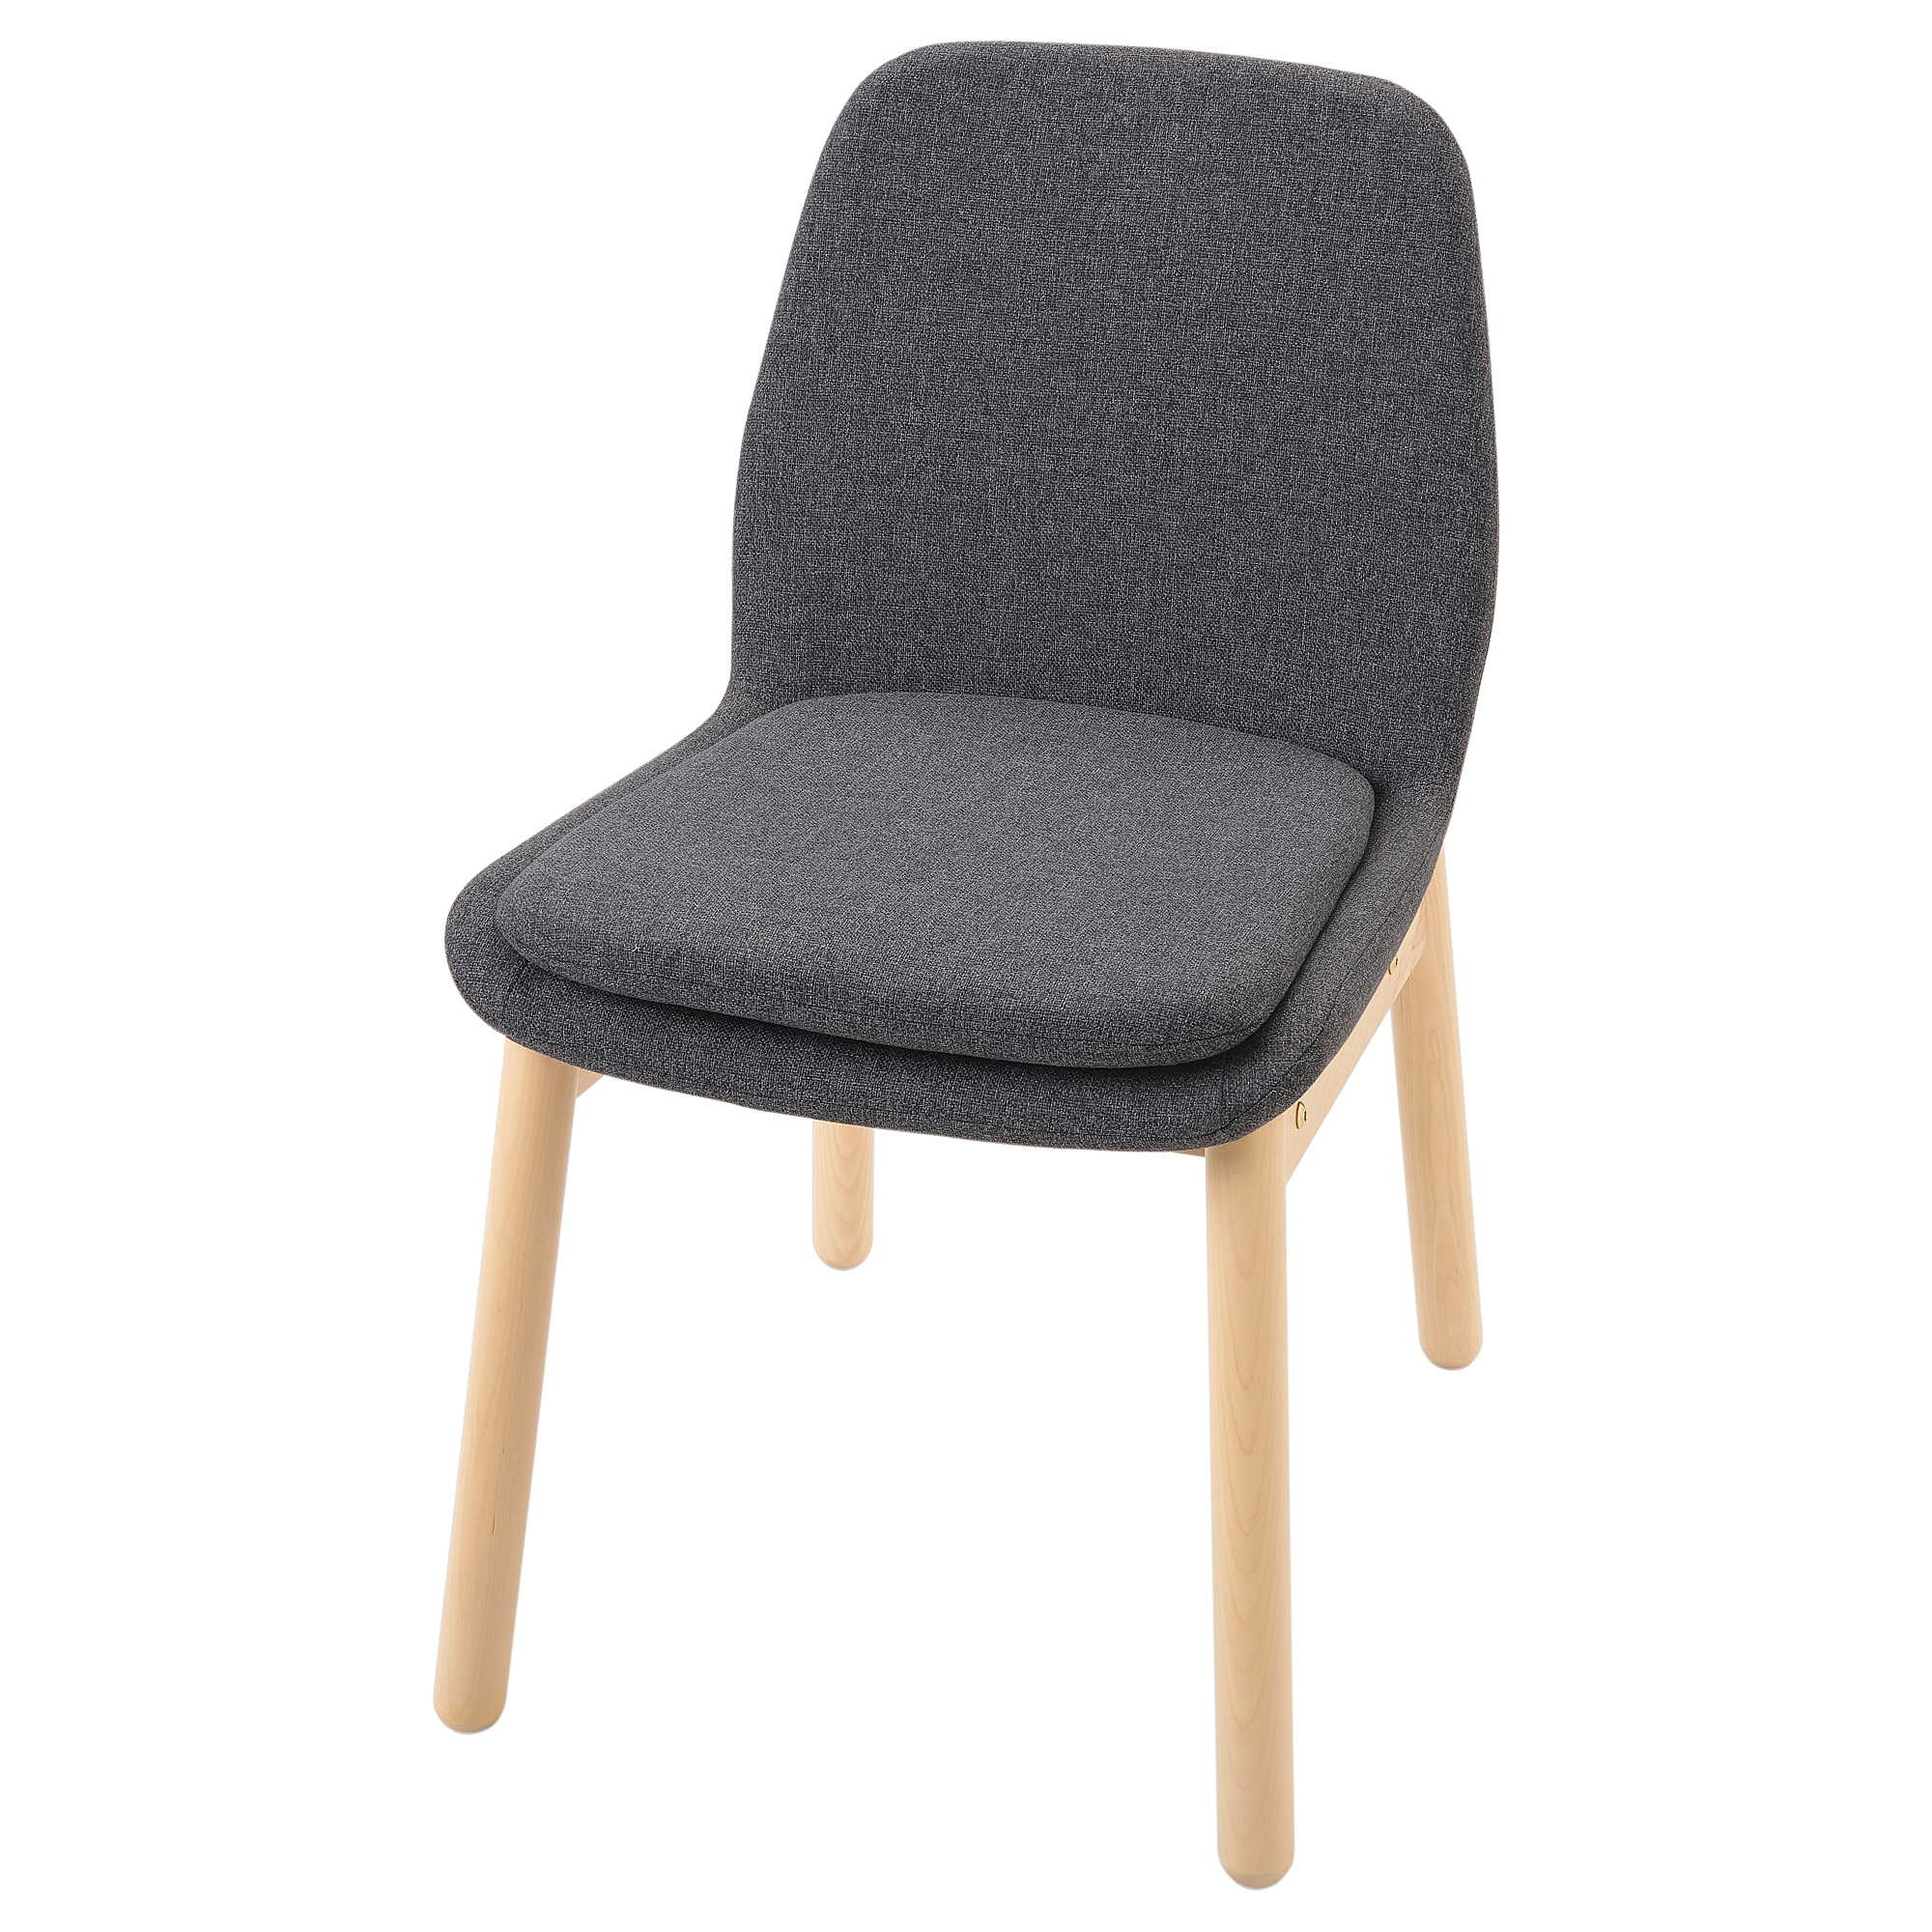 VEDBO chair